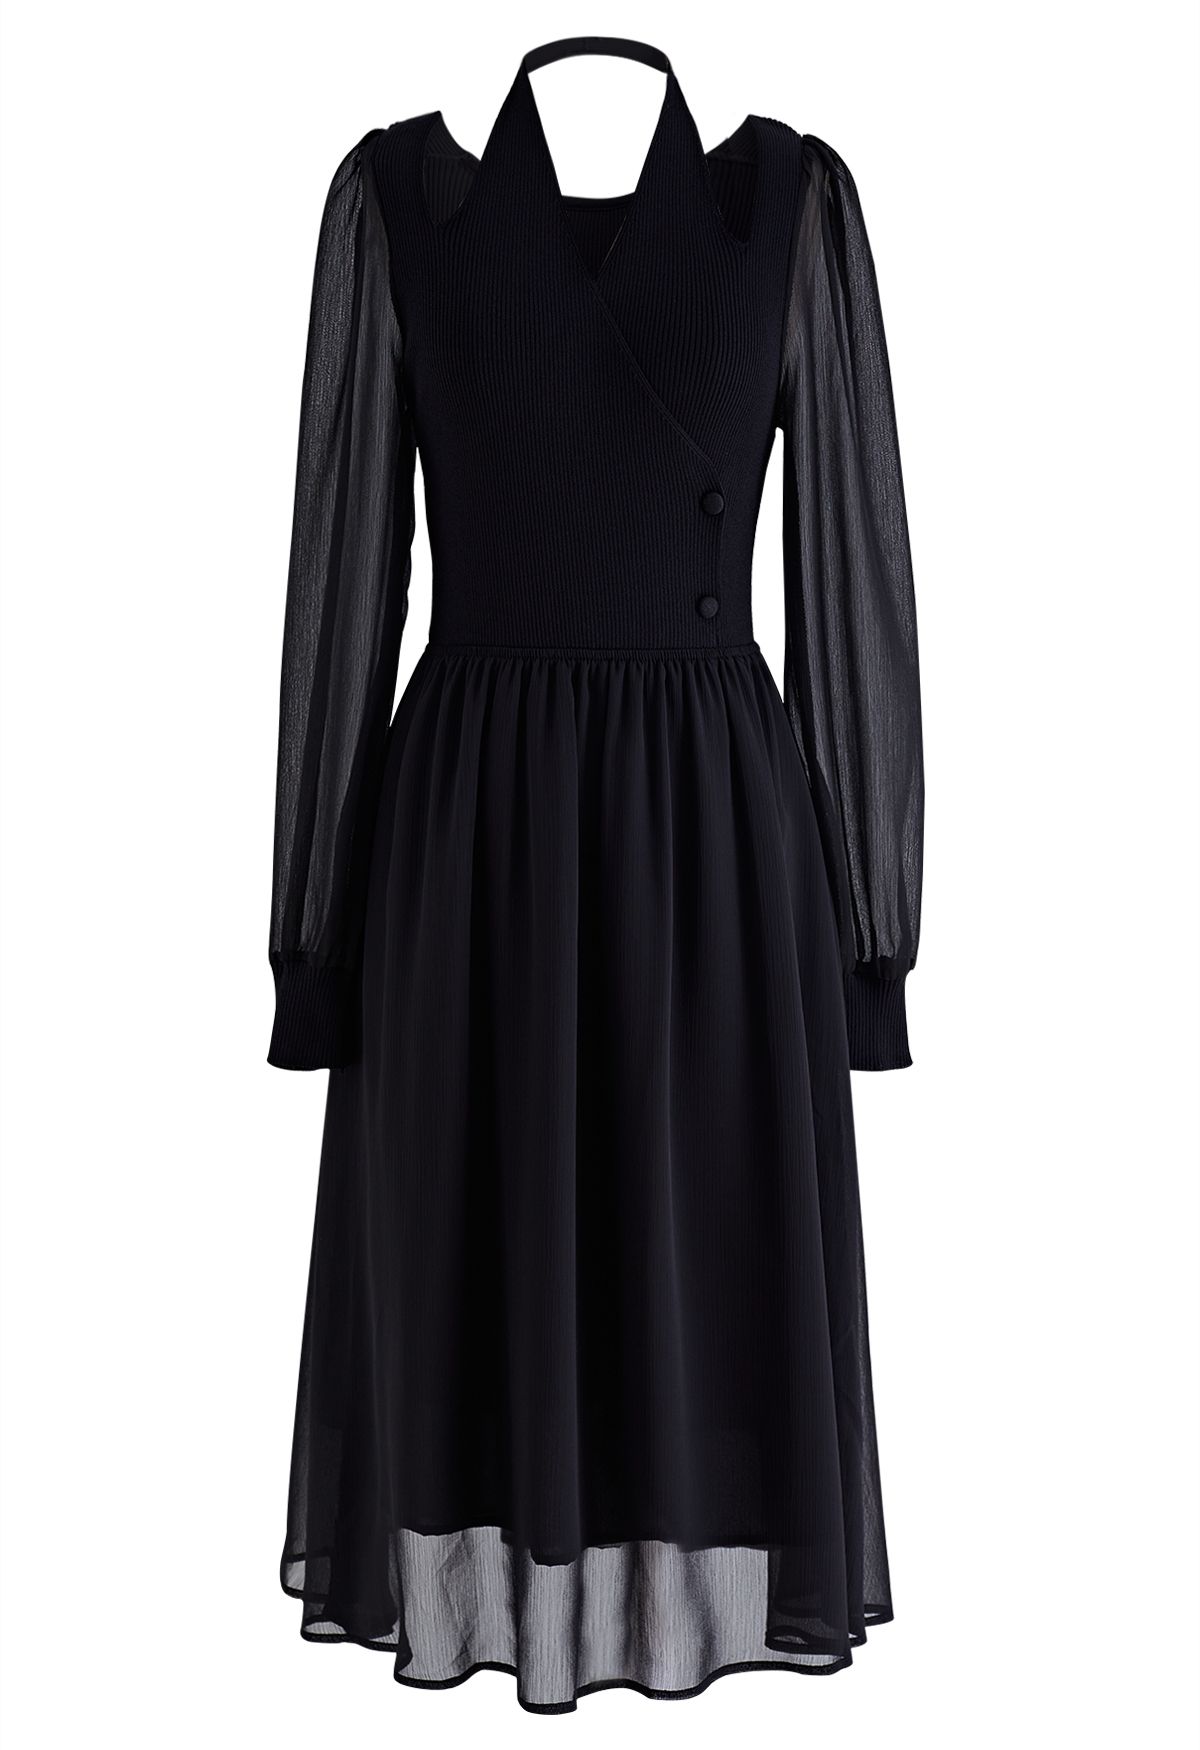 فستان شفاف متوسط الطول بياقة رسن متماسكة باللون الأسود